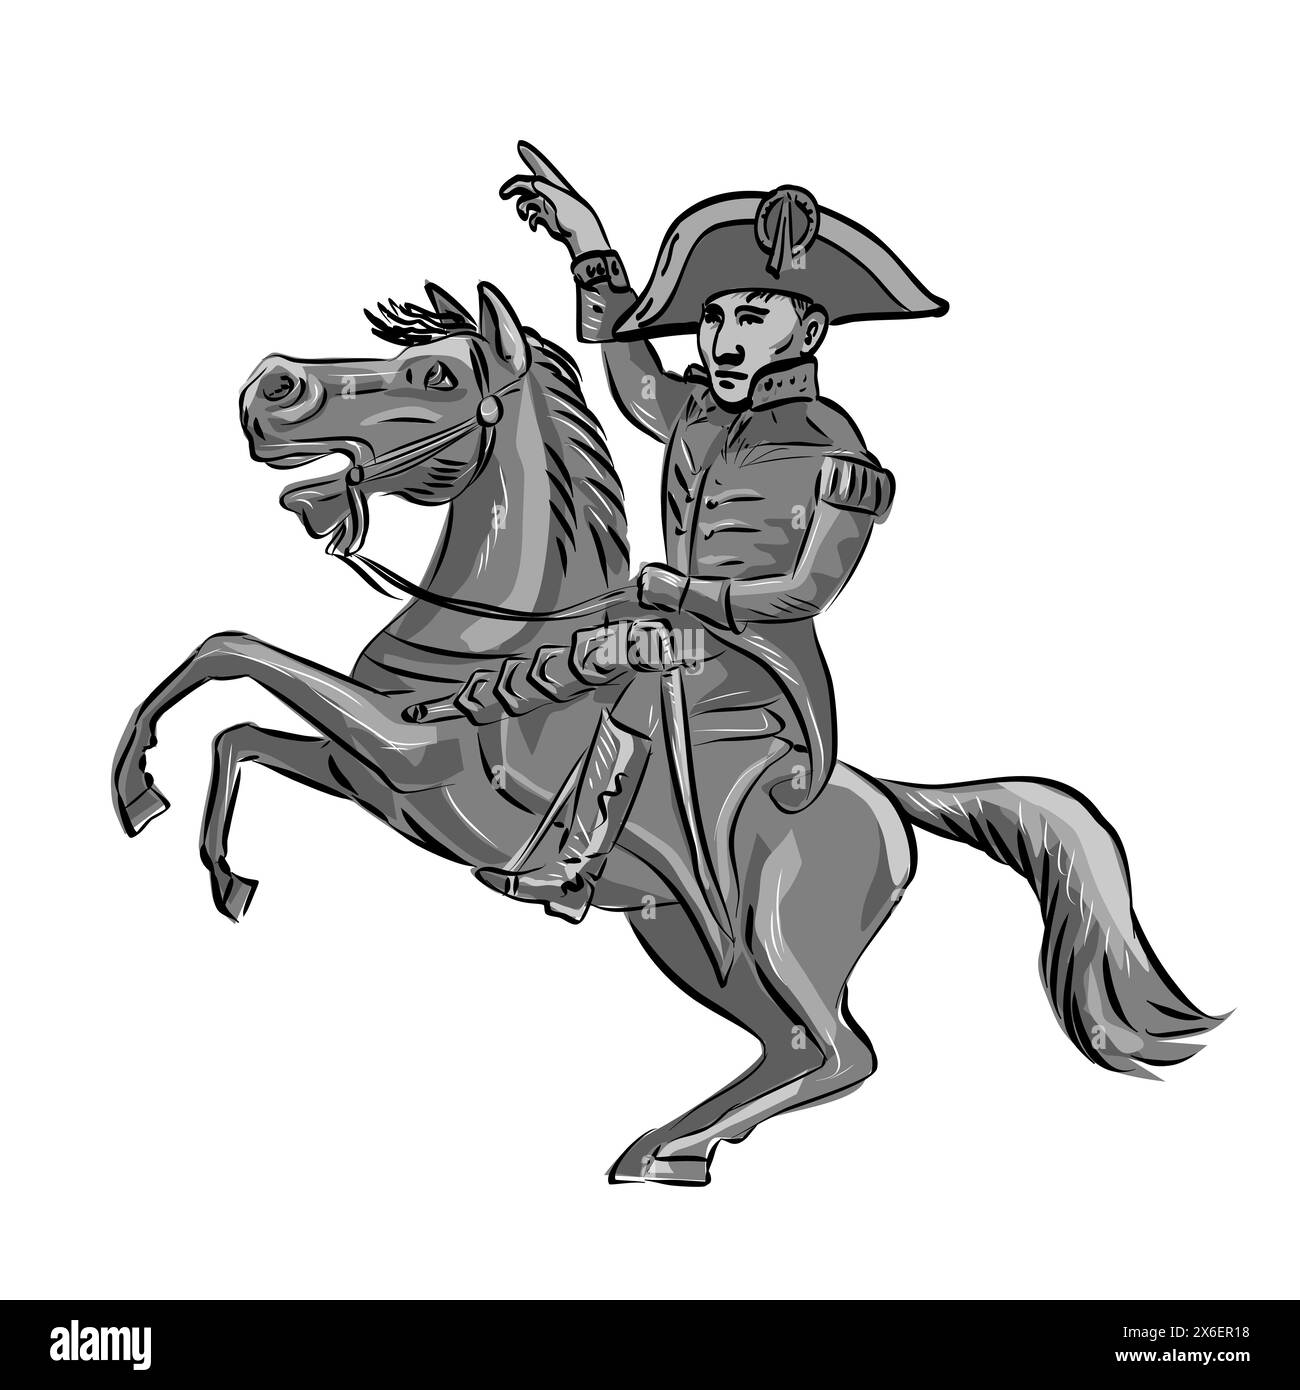 Illustration mascotte de Napoléon Bonaparte ou Napoléon Ier, un empereur français et commandant militaire monté sur un cheval en train de danser vu de côté sur isolé Illustration de Vecteur